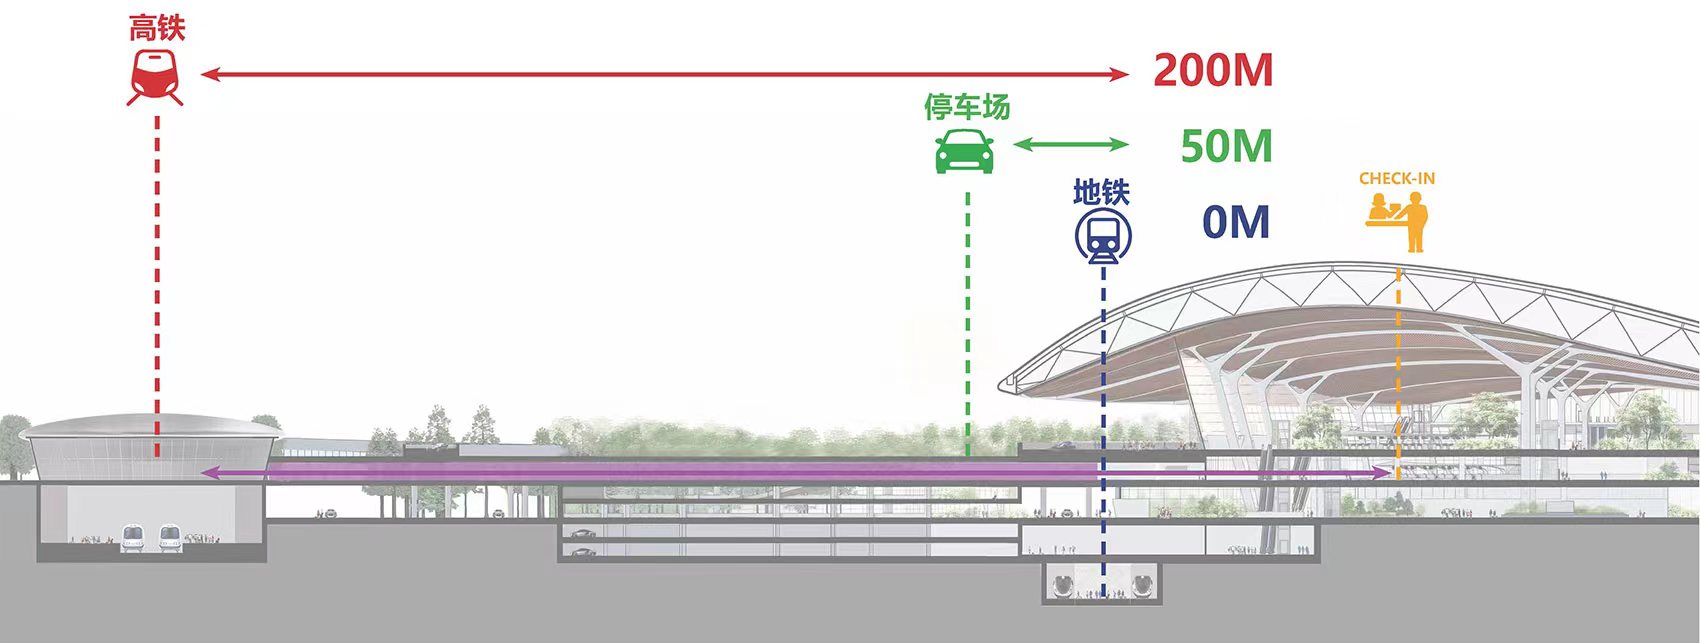 长春机场新航站楼中标方案